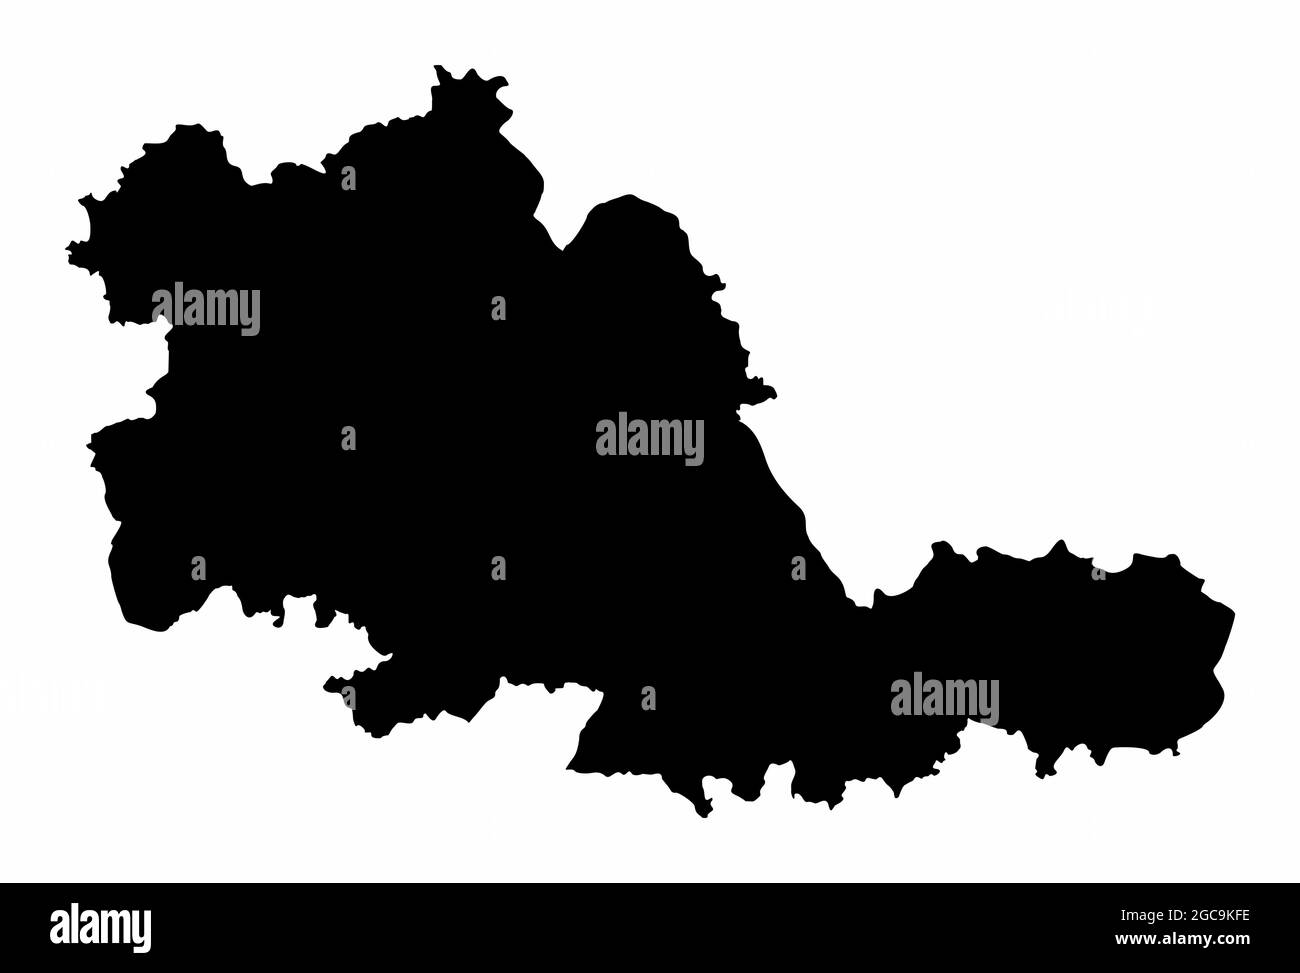 West Midlands County dunkle Silhouette Karte isoliert auf weißem Hintergrund, England Stock Vektor